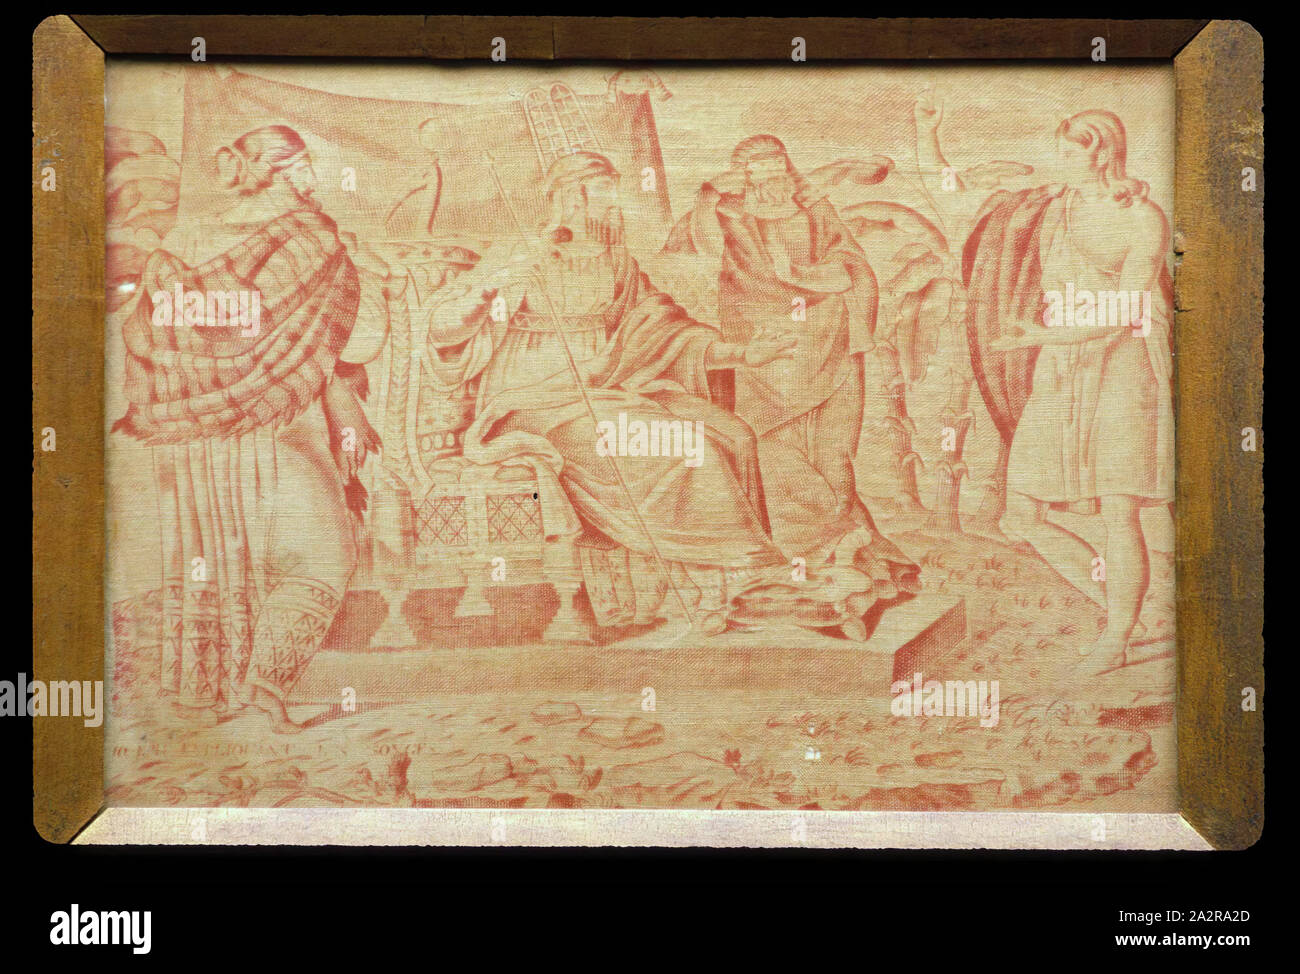 Inconnu (français), Joseph expliquant les songes, 18e/19e siècle, le coton, la plaque de cuivre, imprimé, 10 x 14 po Banque D'Images